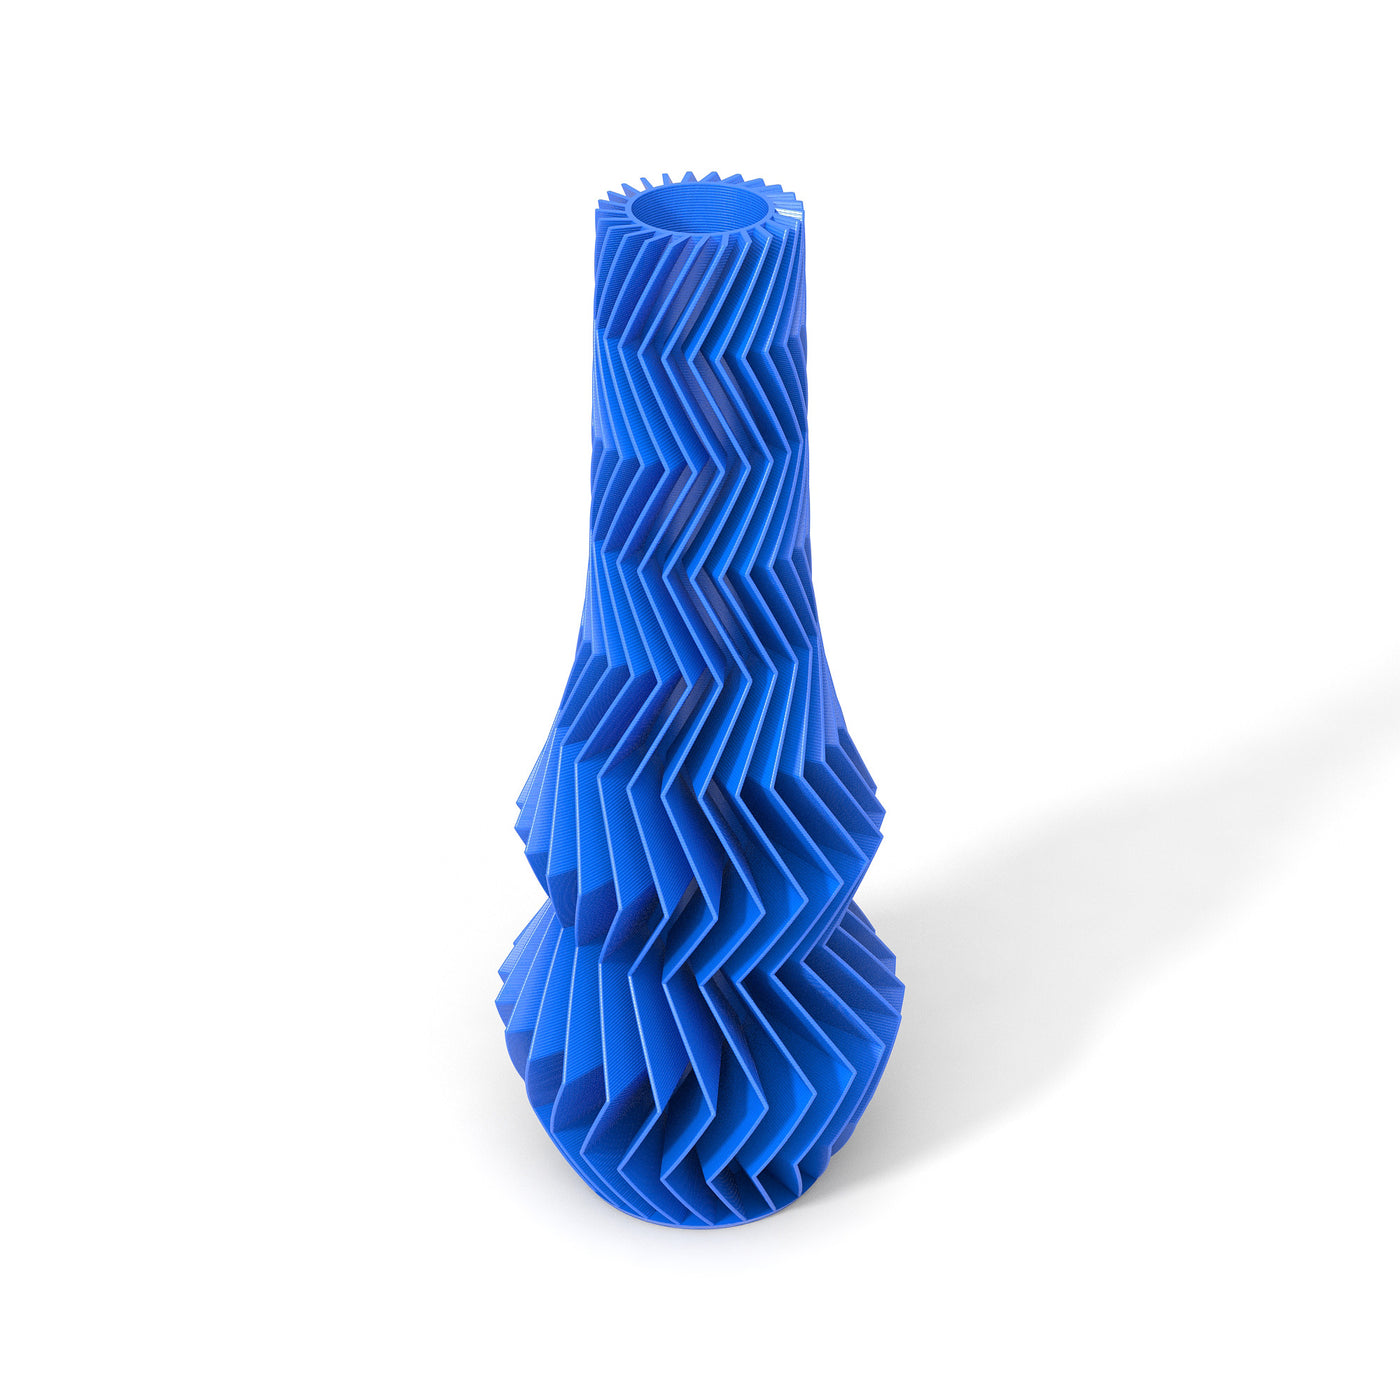 Modrá designová váza 3D print ZIG ZAG 1